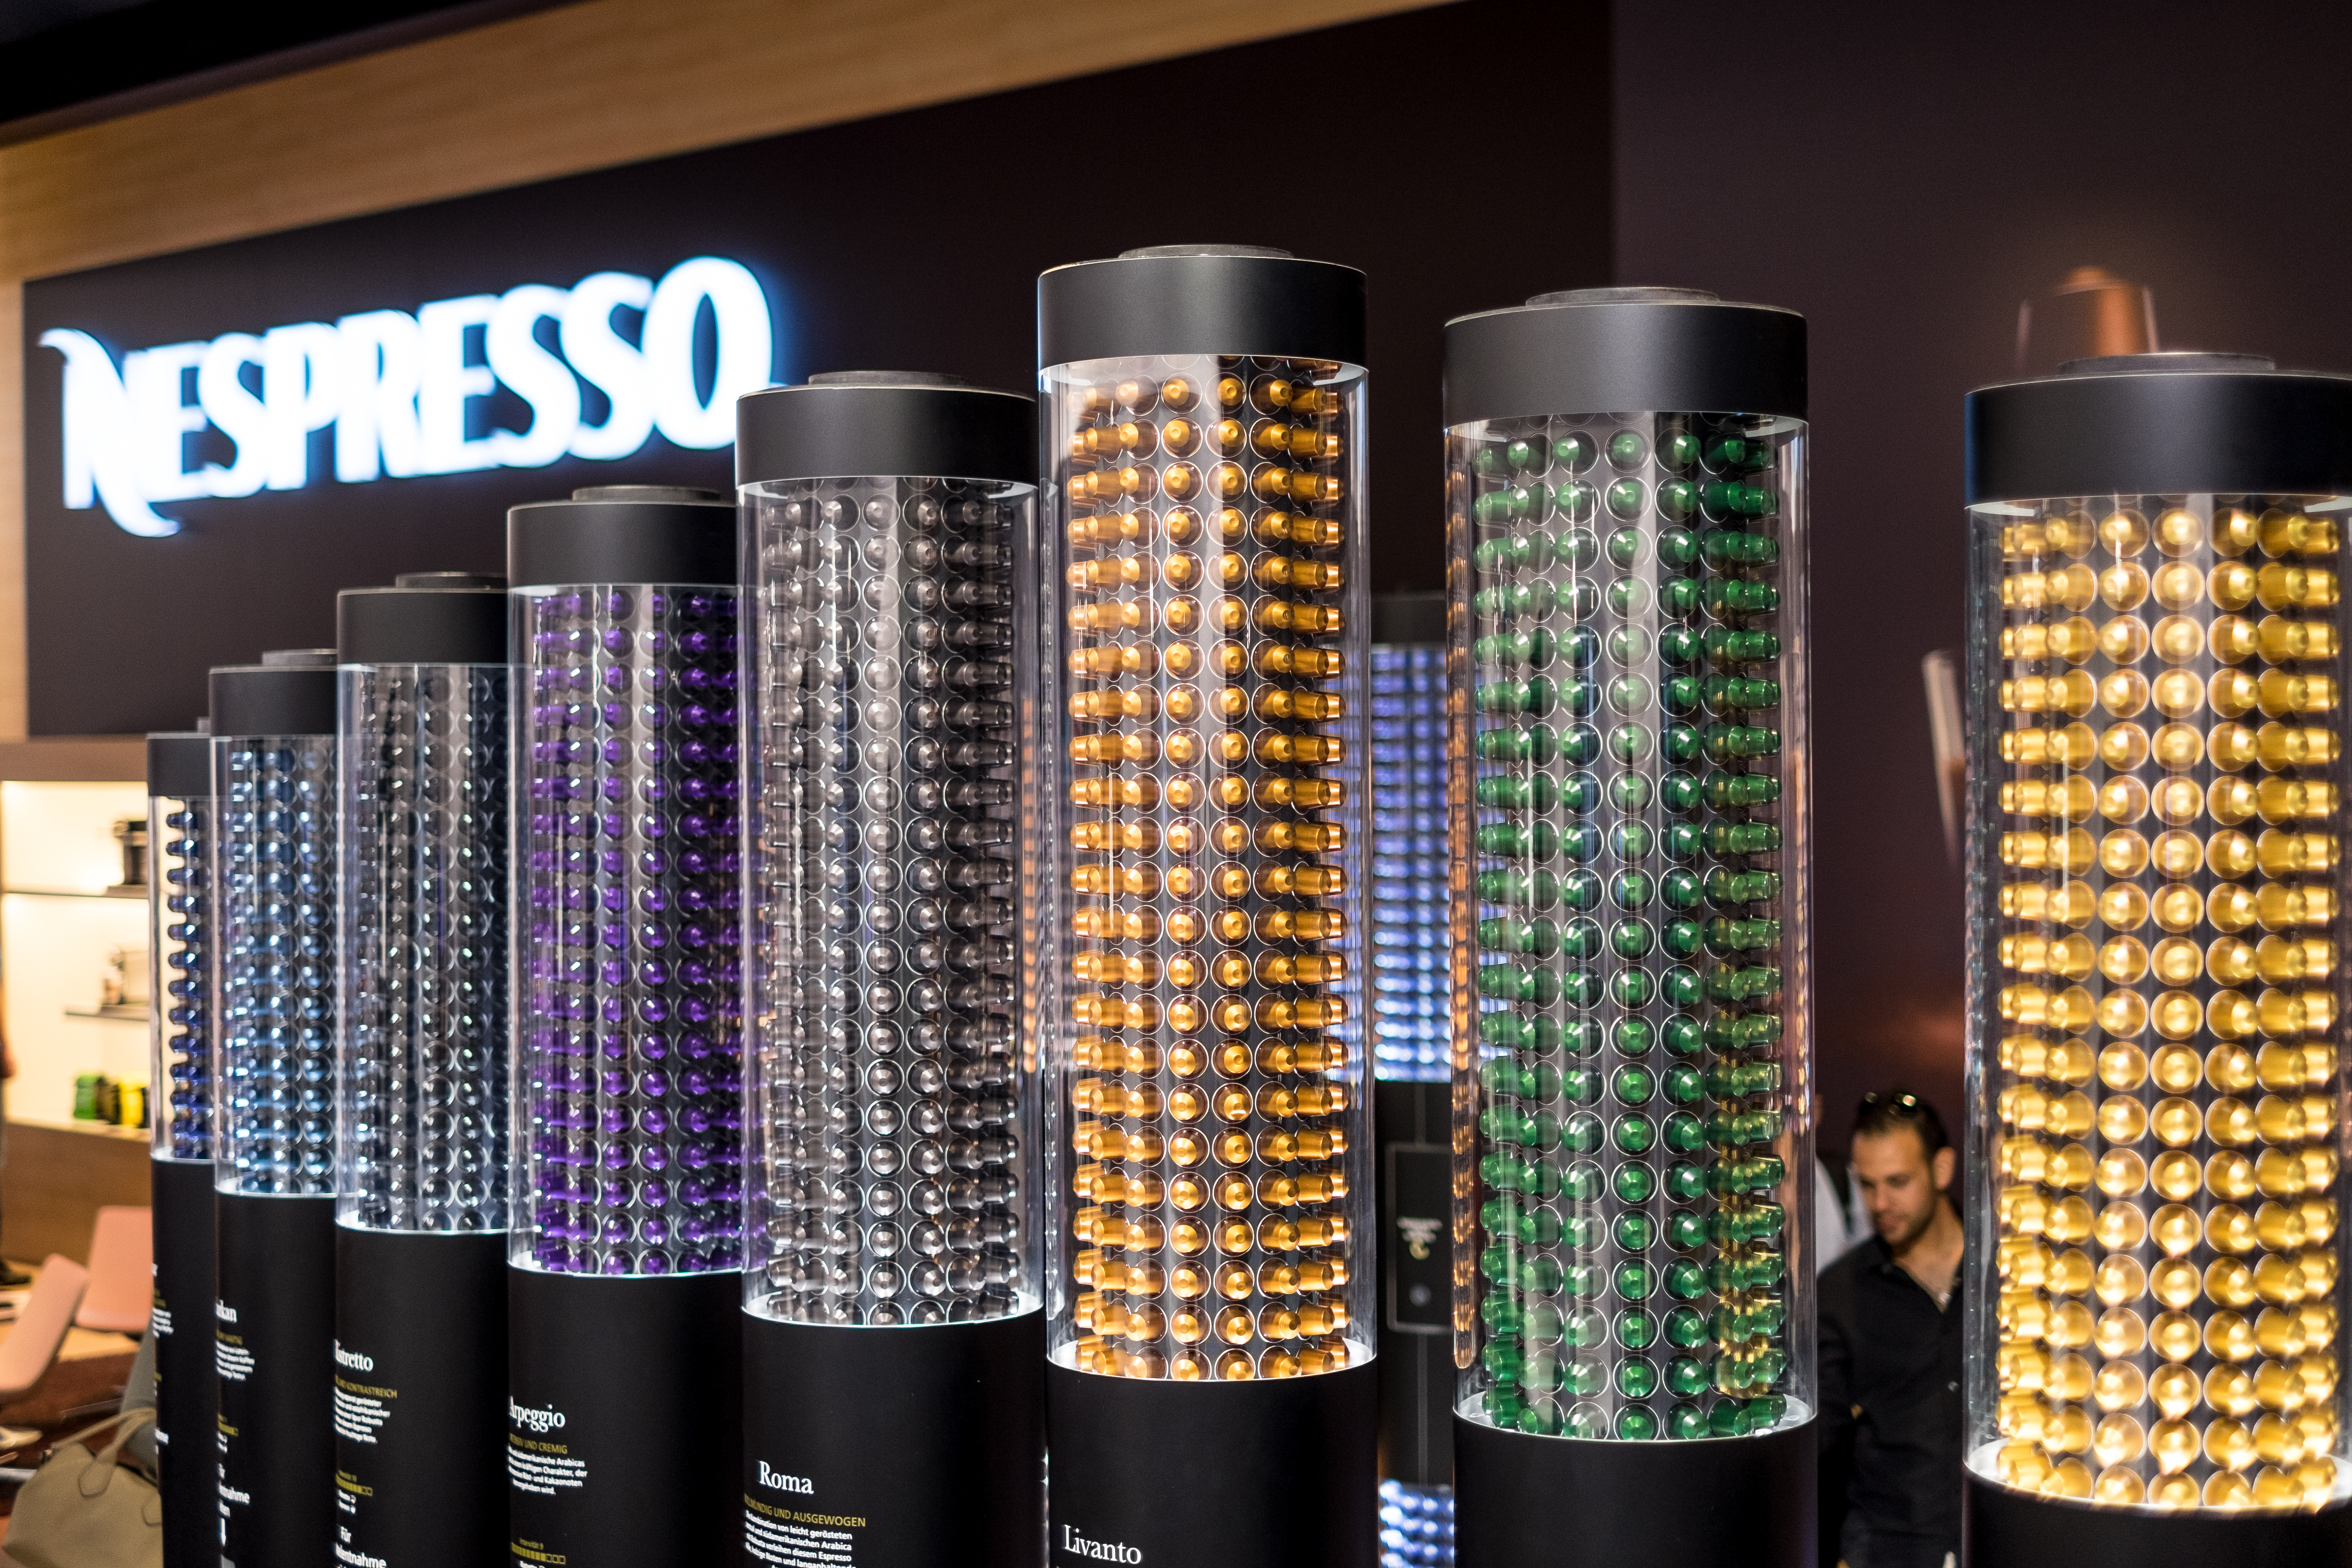 一张照片显示了 Nespresso 制作的所有小型塑料咖啡包。